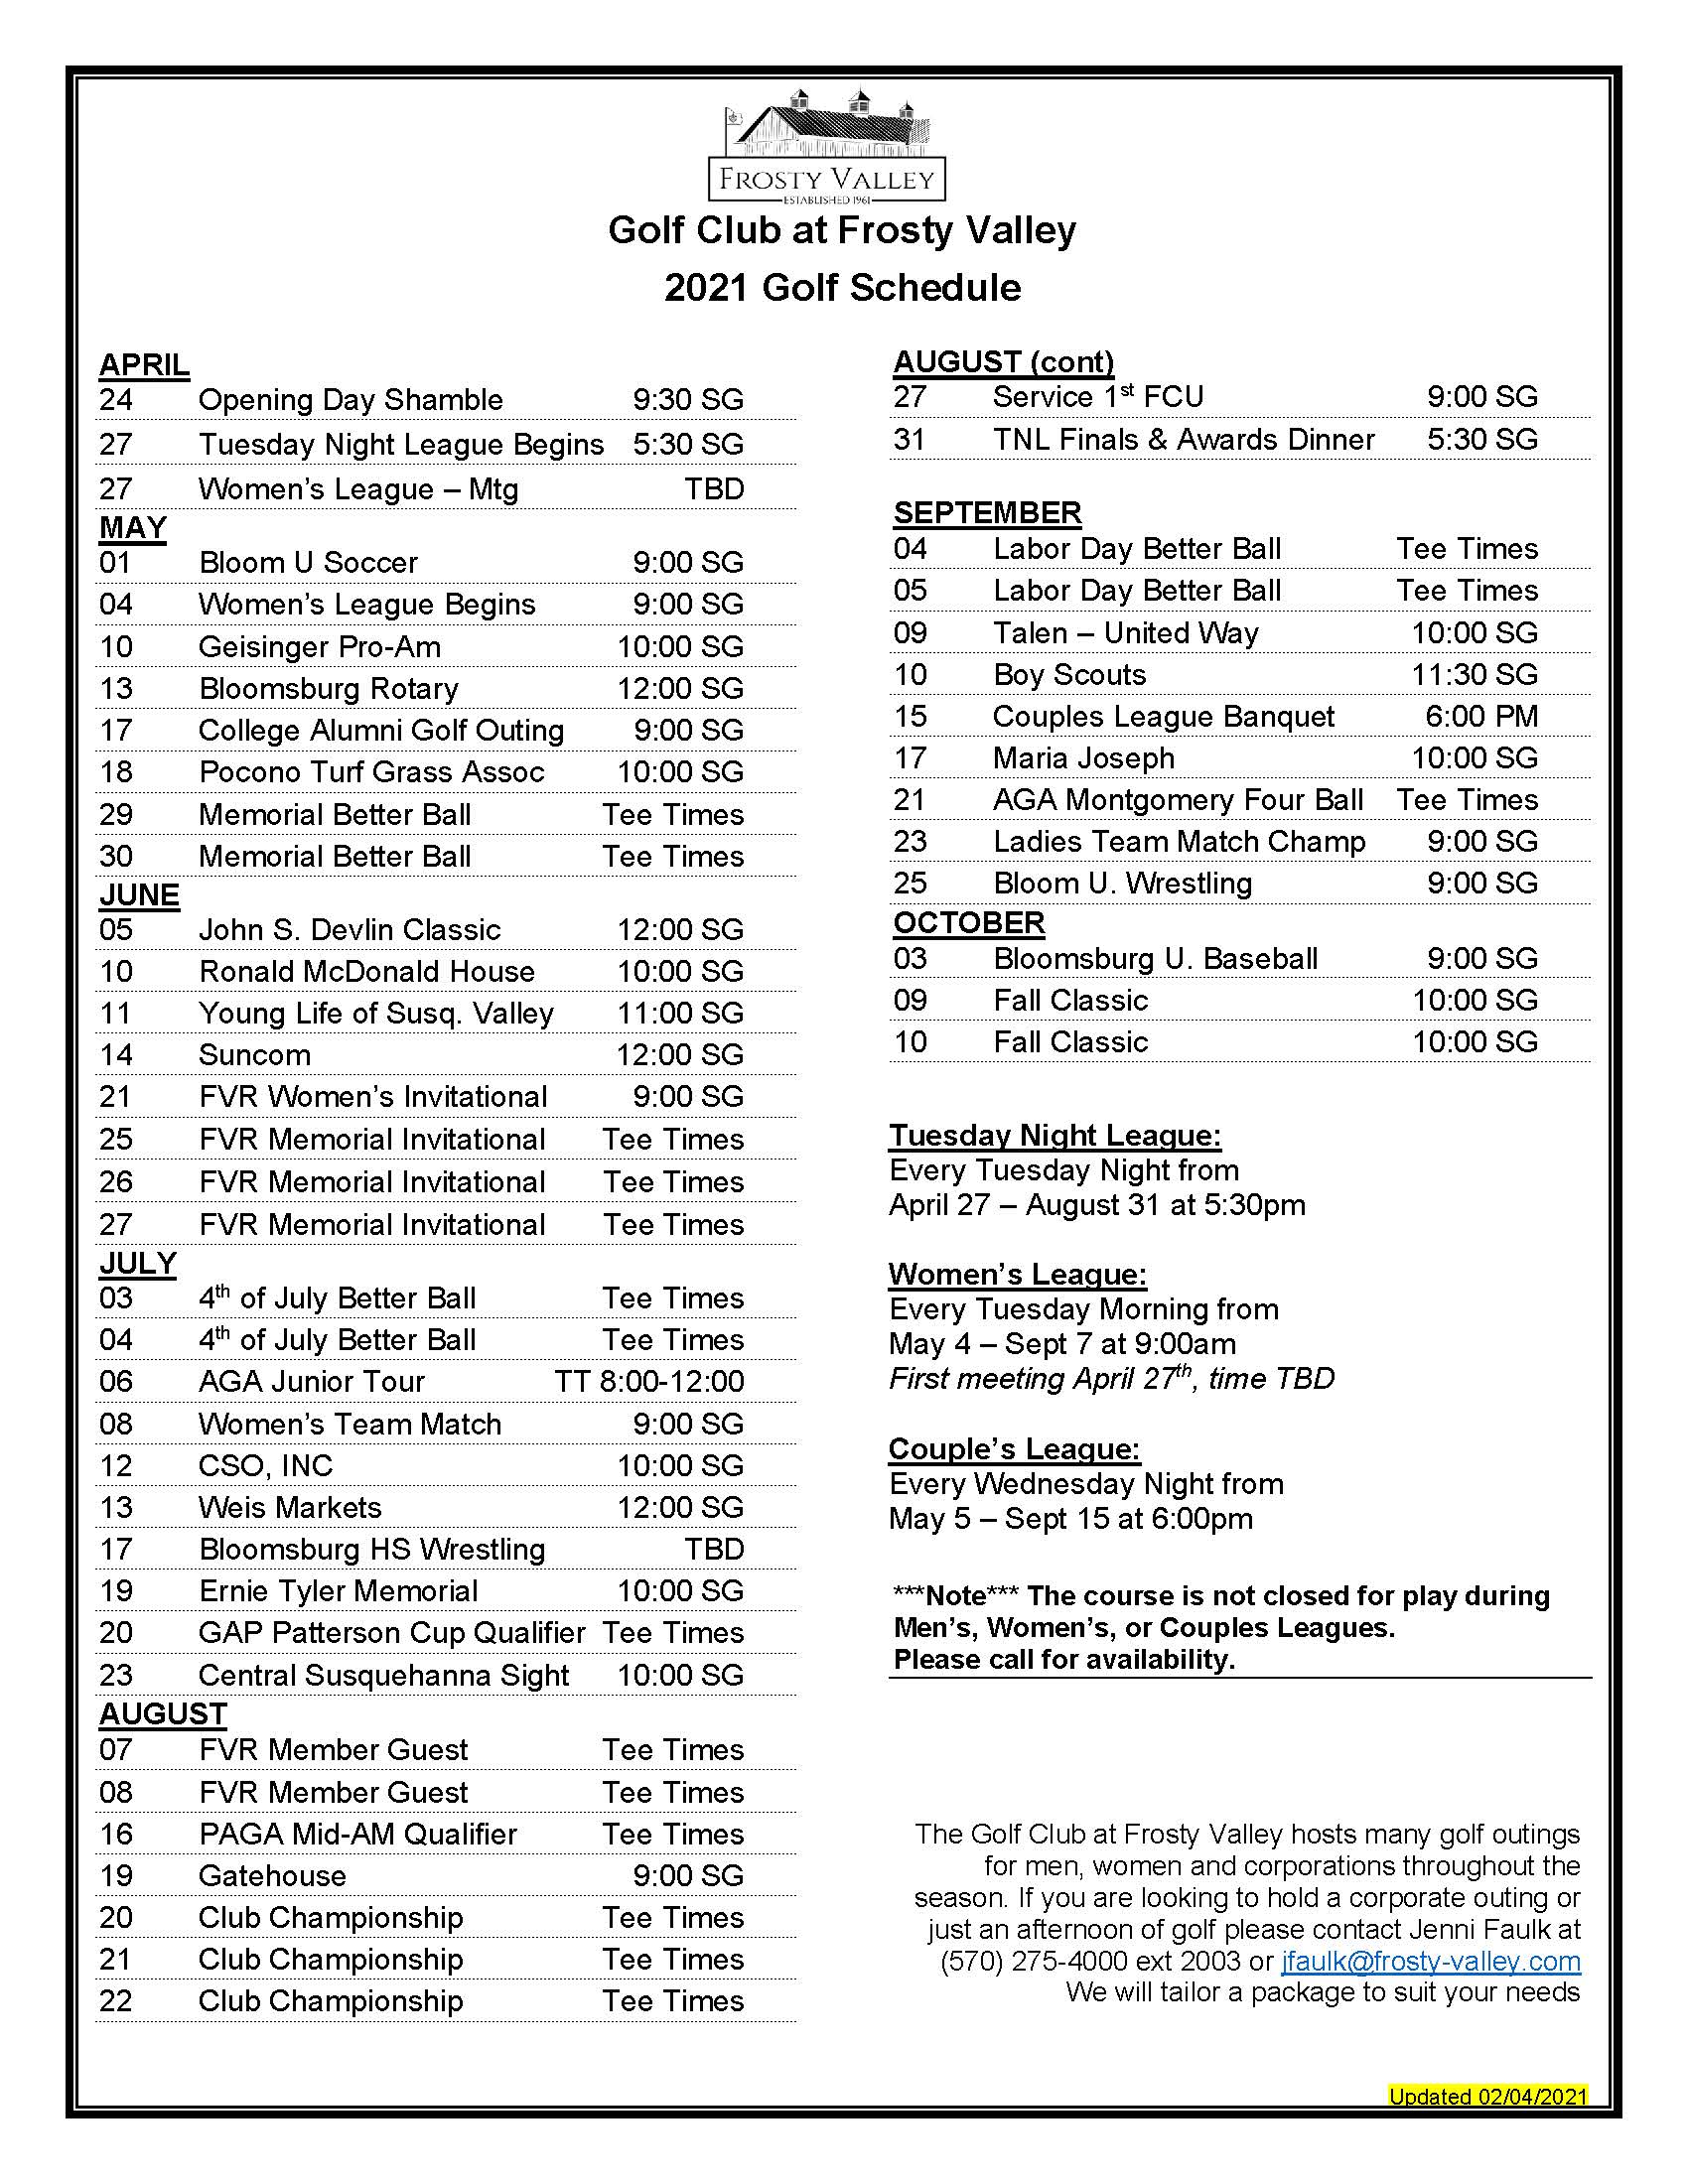 senior tour schedule golf